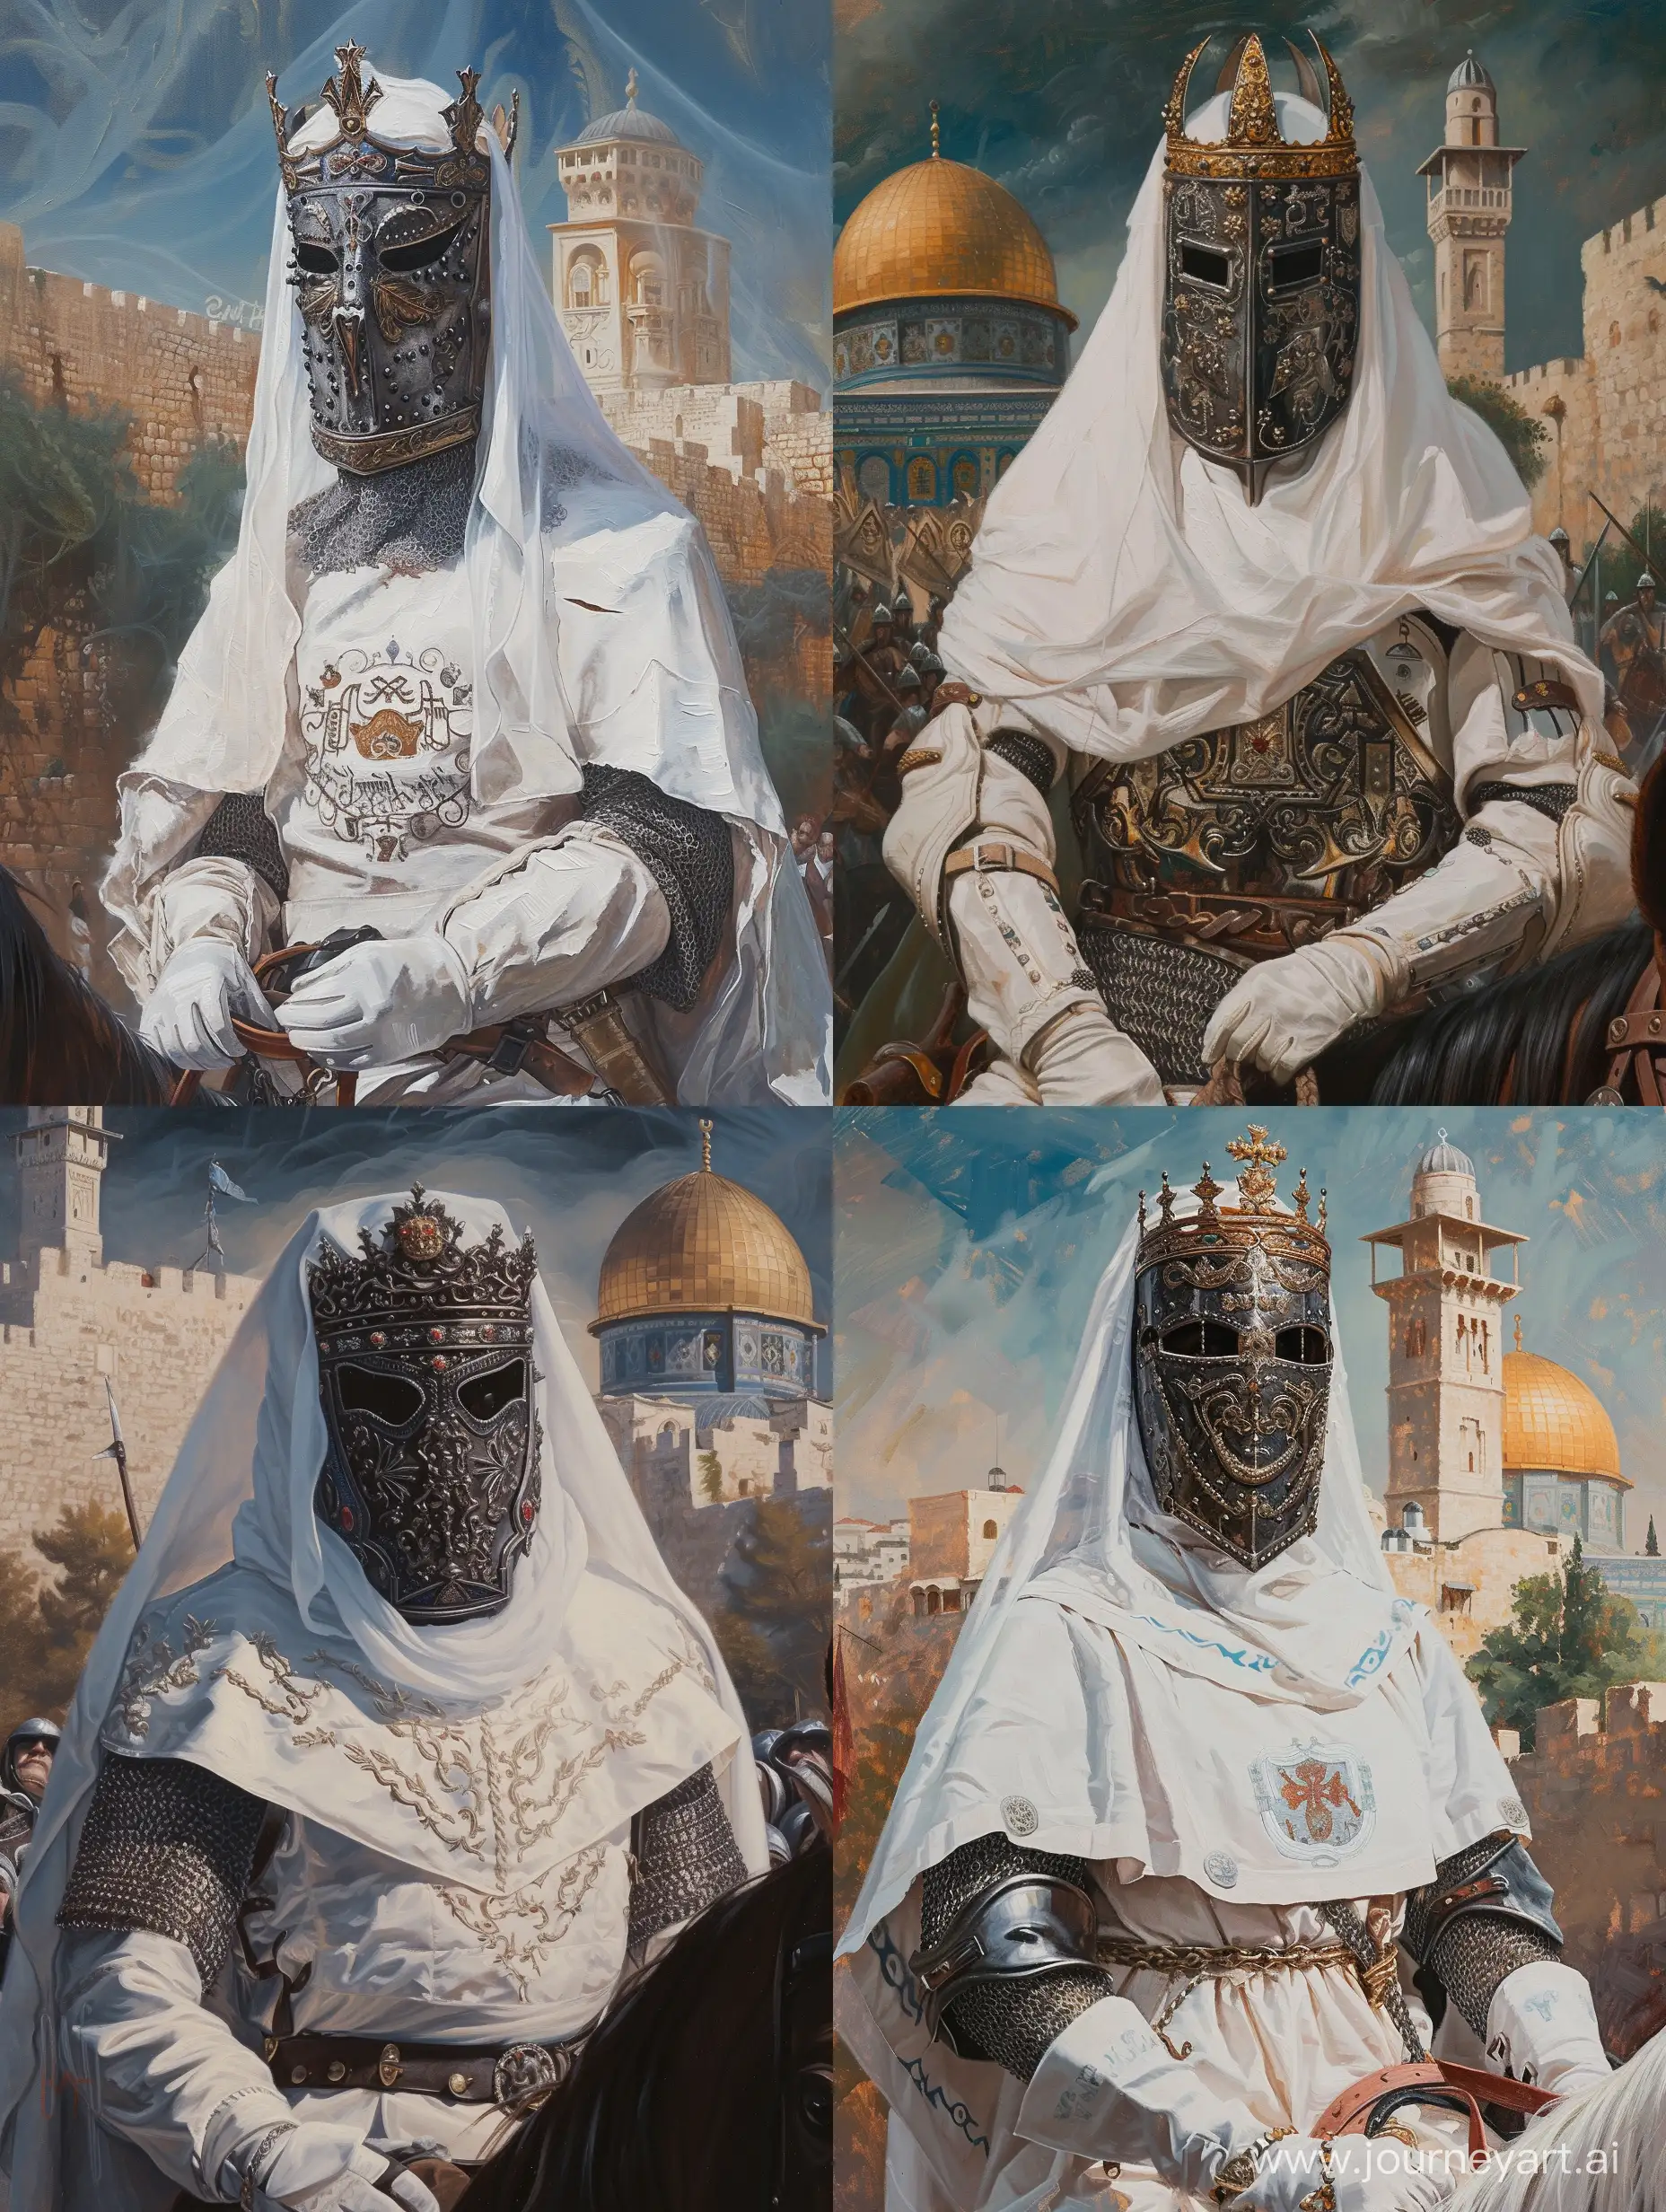 King-Baldwin-IV-of-Jerusalem-Riding-with-Majesty-Noble-Figure-in-White-Tabard-and-Iron-Mask-on-Horseback